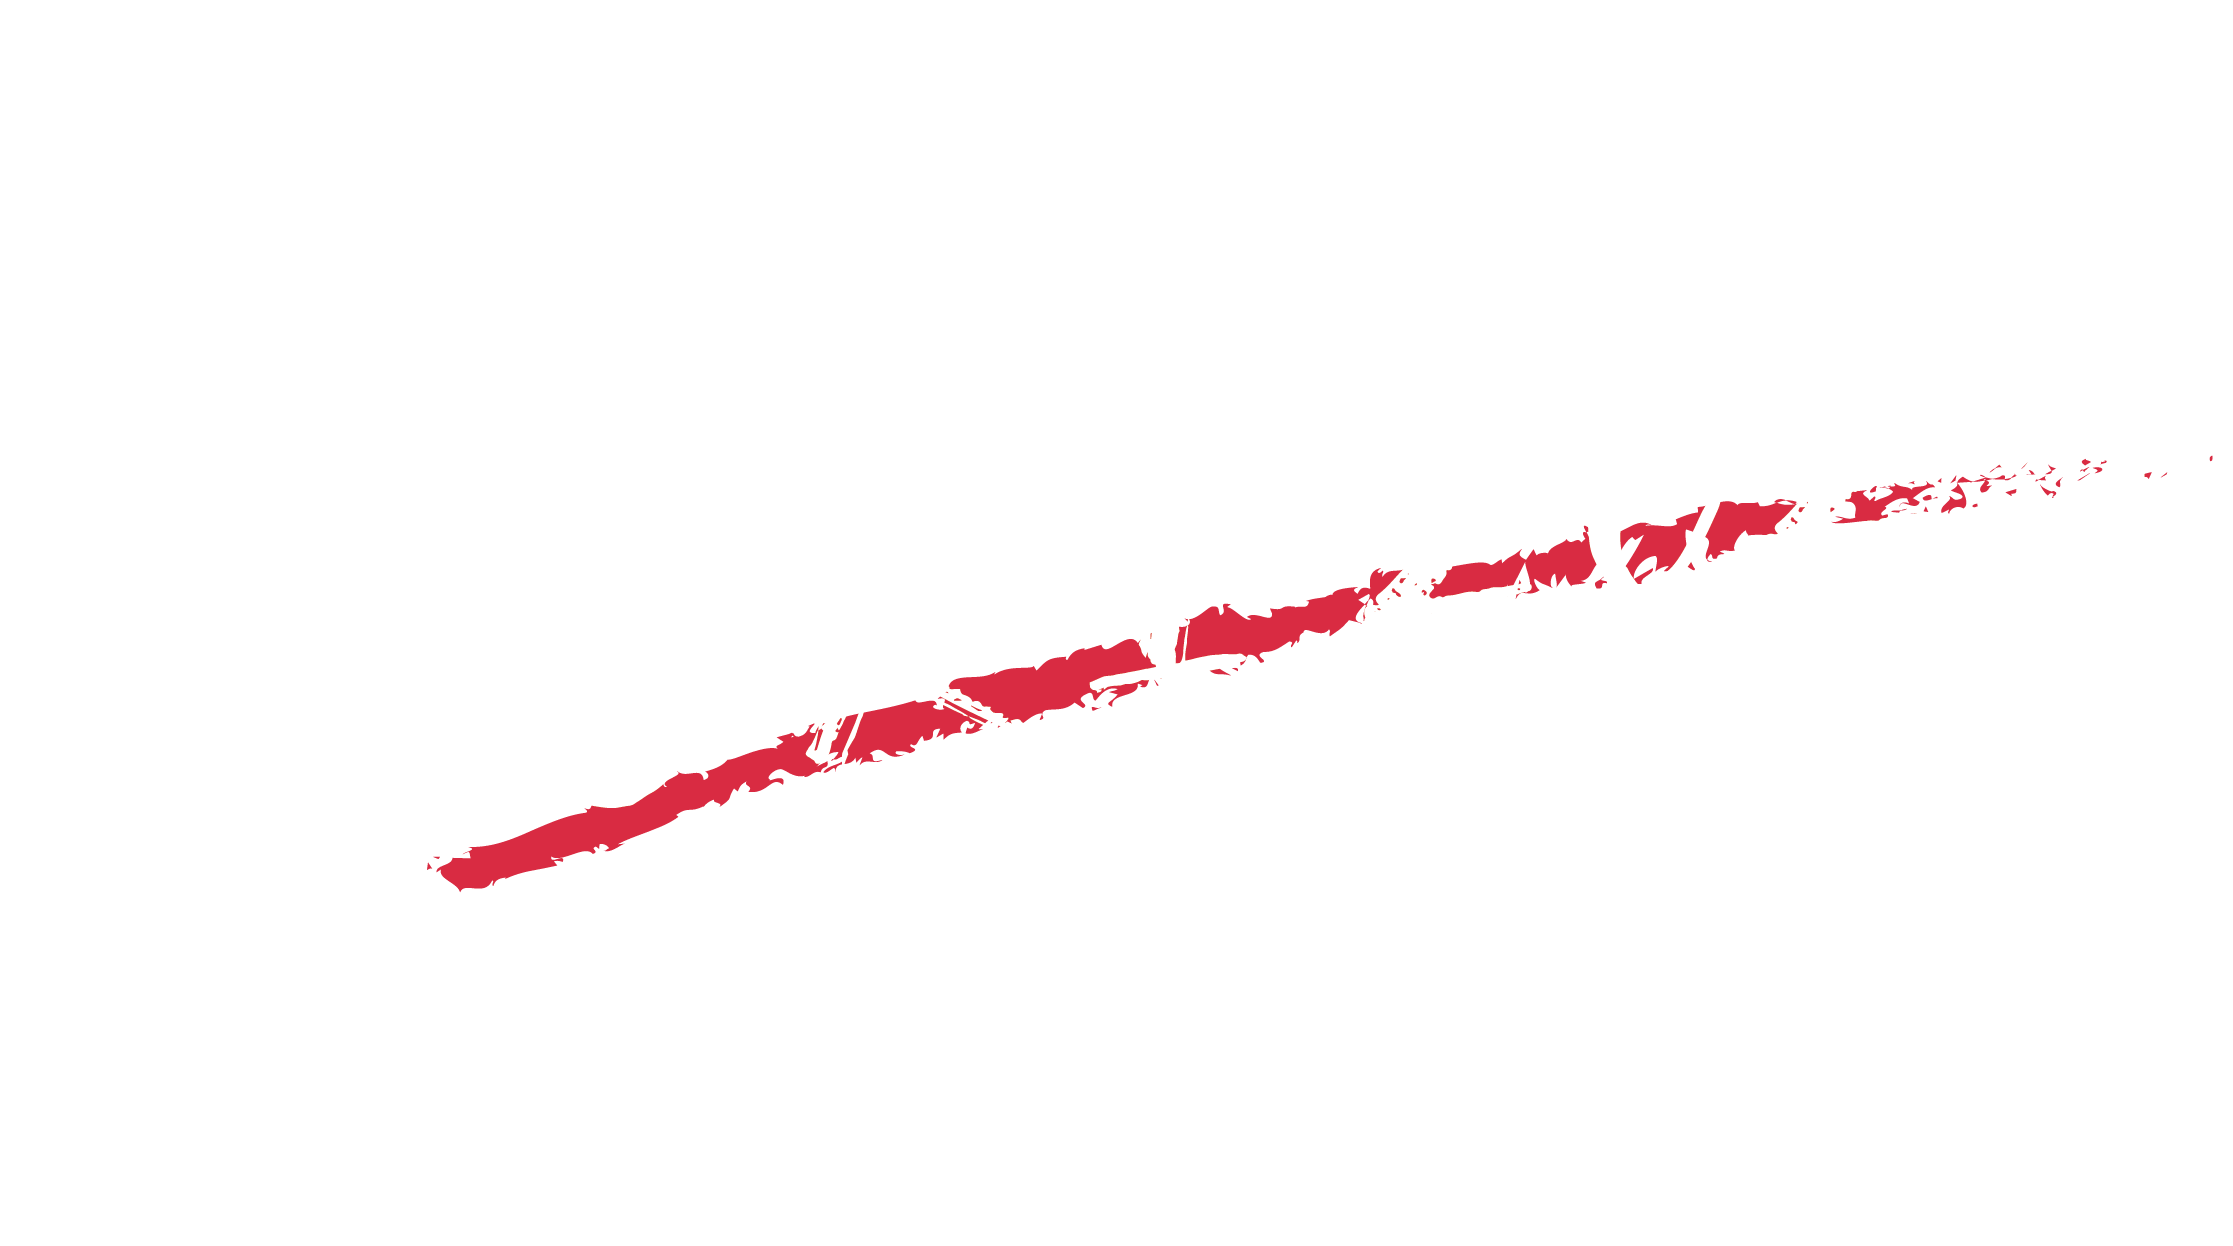 ACRI 2023 in Kobe, Japan